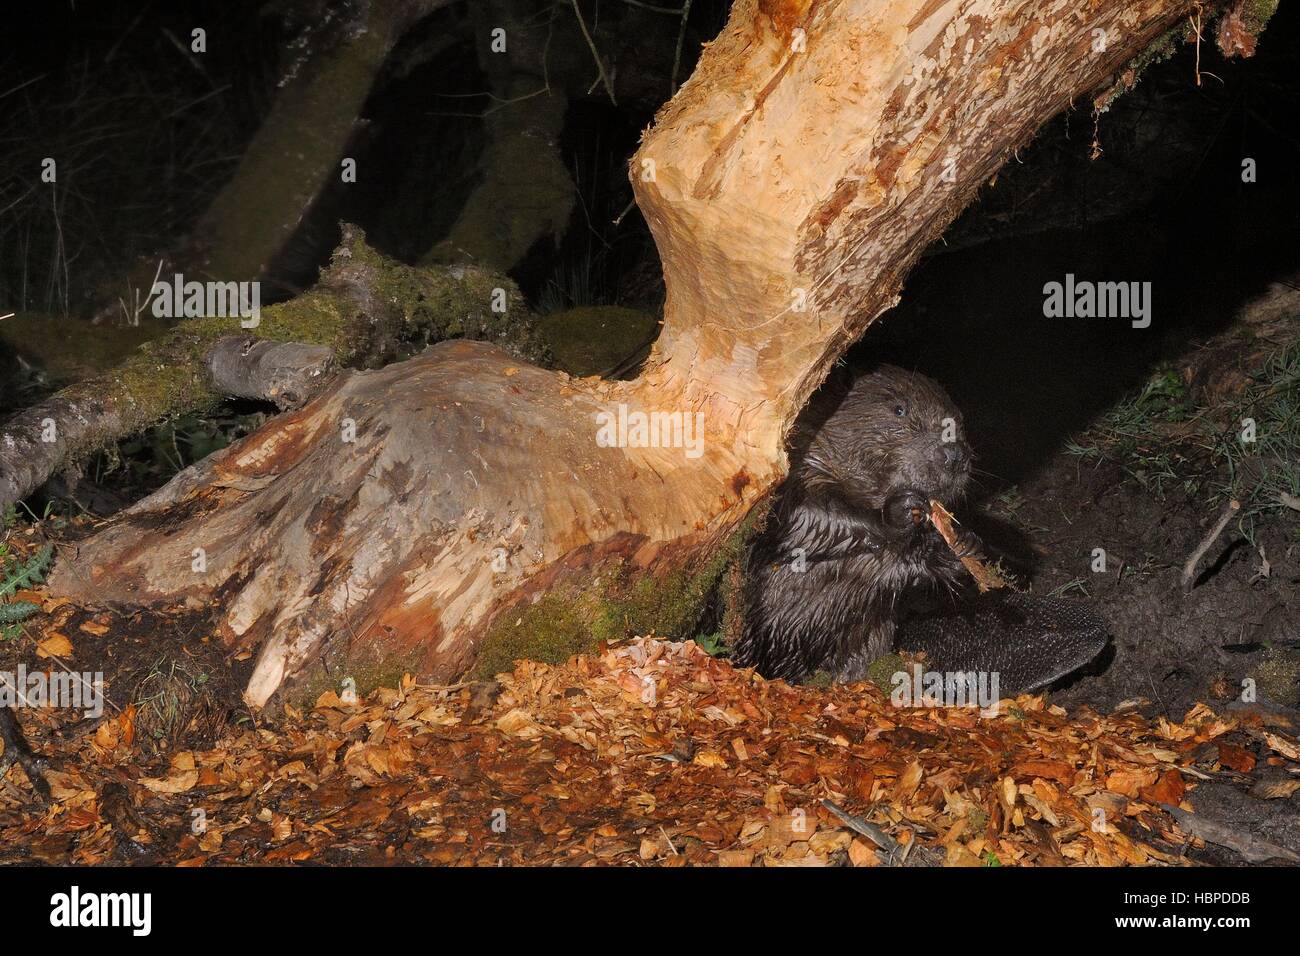 Le castor d'Eurasie (Castor fiber) maintenant et à mâcher qu'il a rongé l'écorce du tronc d'un saule la nuit, Devon, UK. Banque D'Images